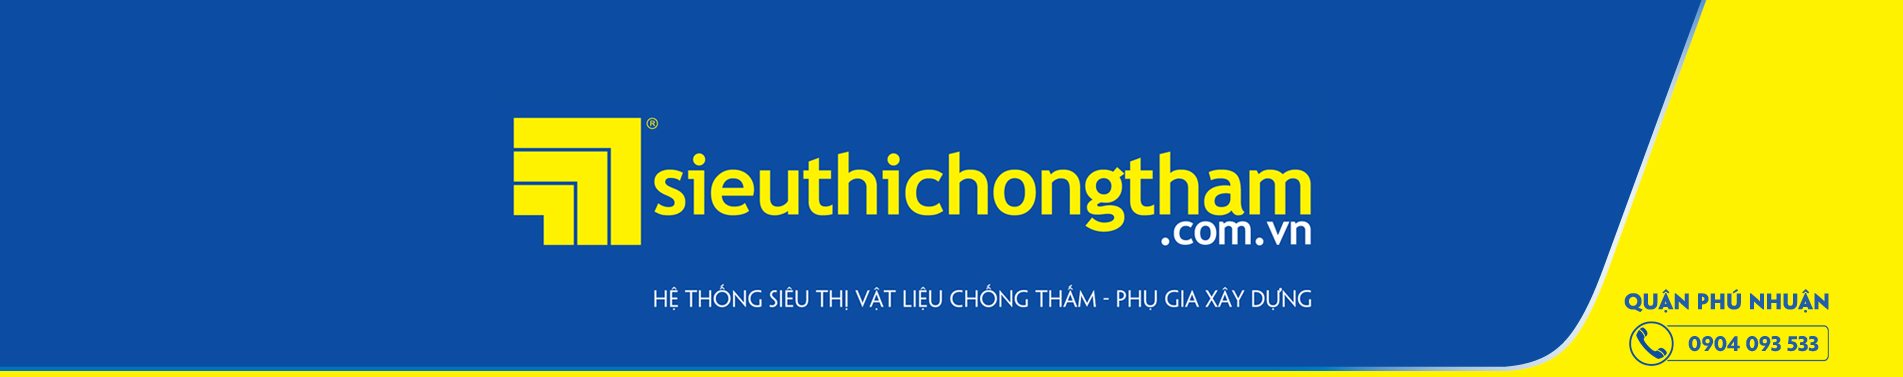 Quan Phu Nhuan Banner